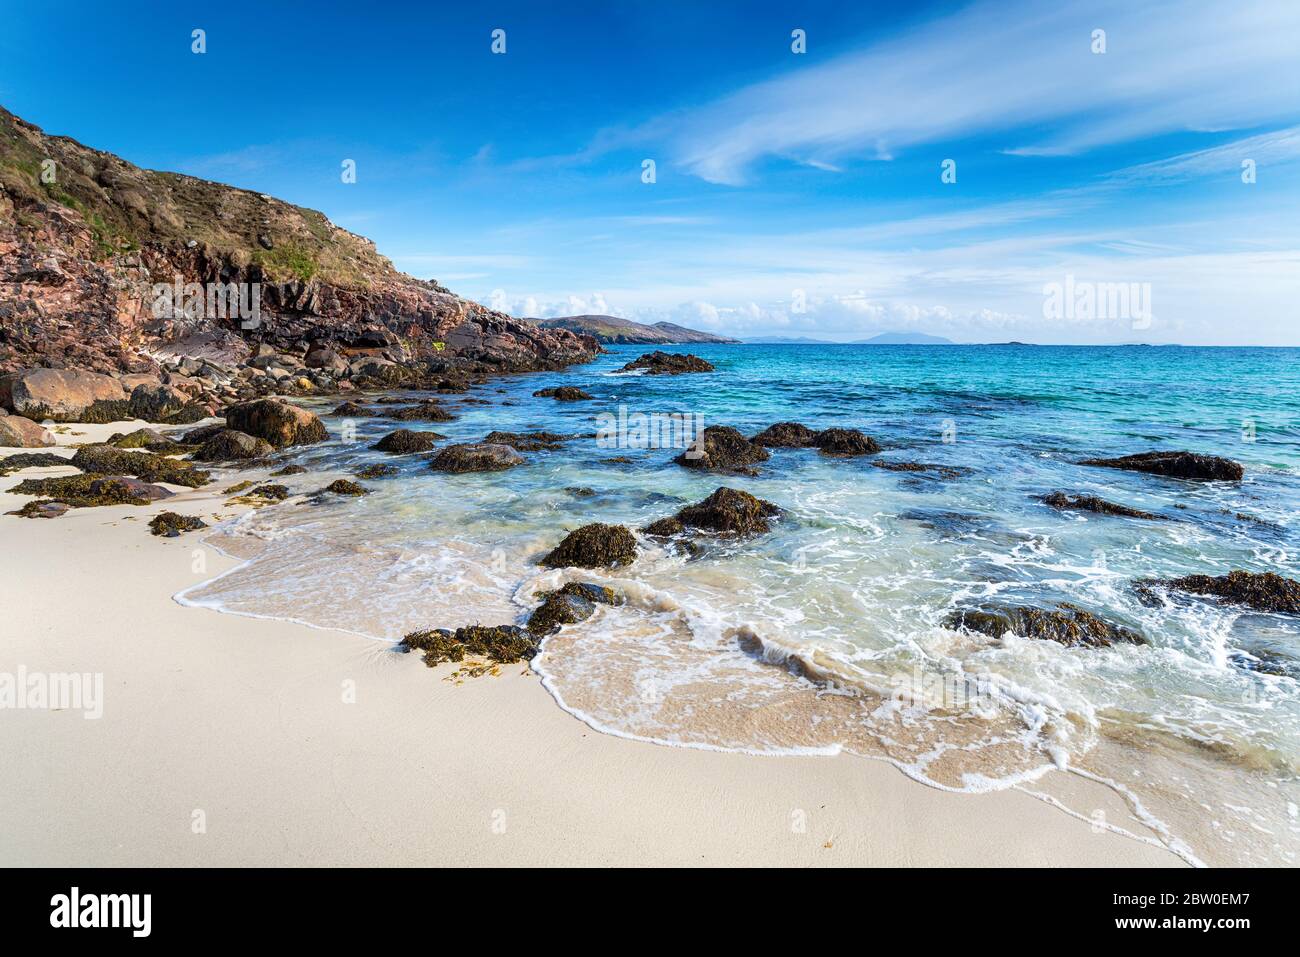 La plage de sable de Hushinish sur l'île de Harris dans les îles occidentales de l'Écosse Banque D'Images